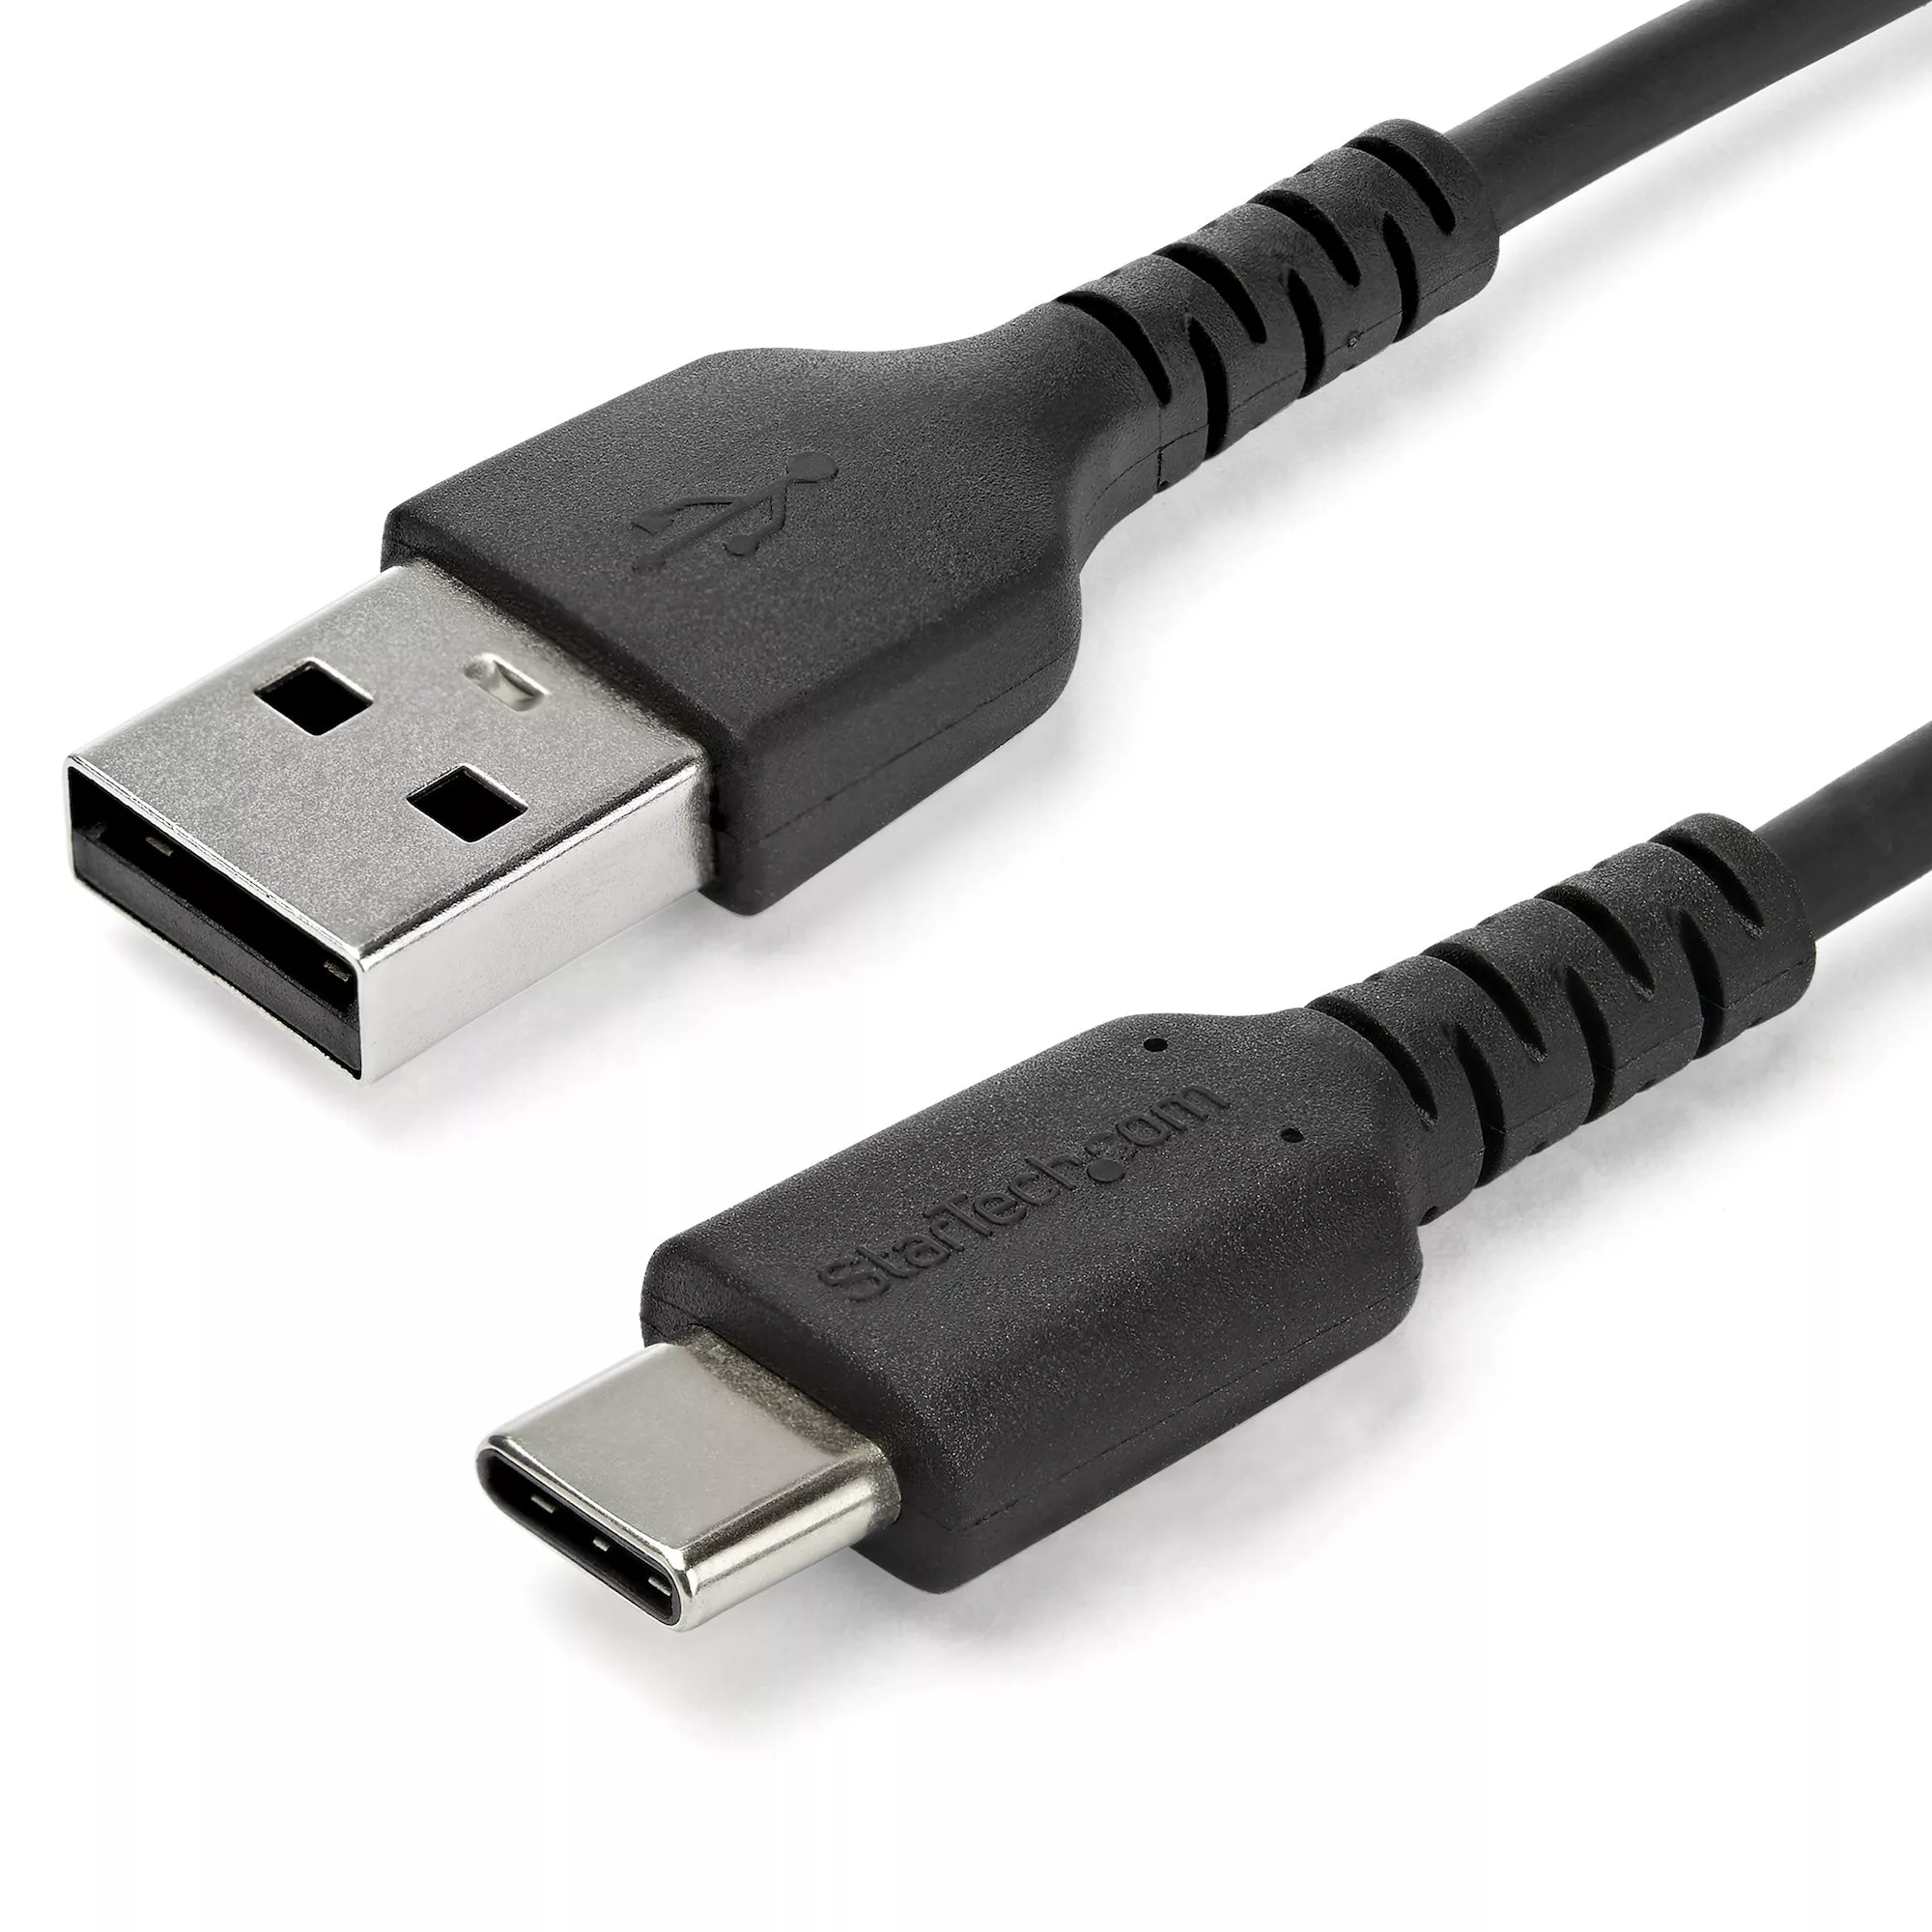 Achat StarTech.com Câble USB-C vers USB 2.0 de 1 m - Noir au meilleur prix